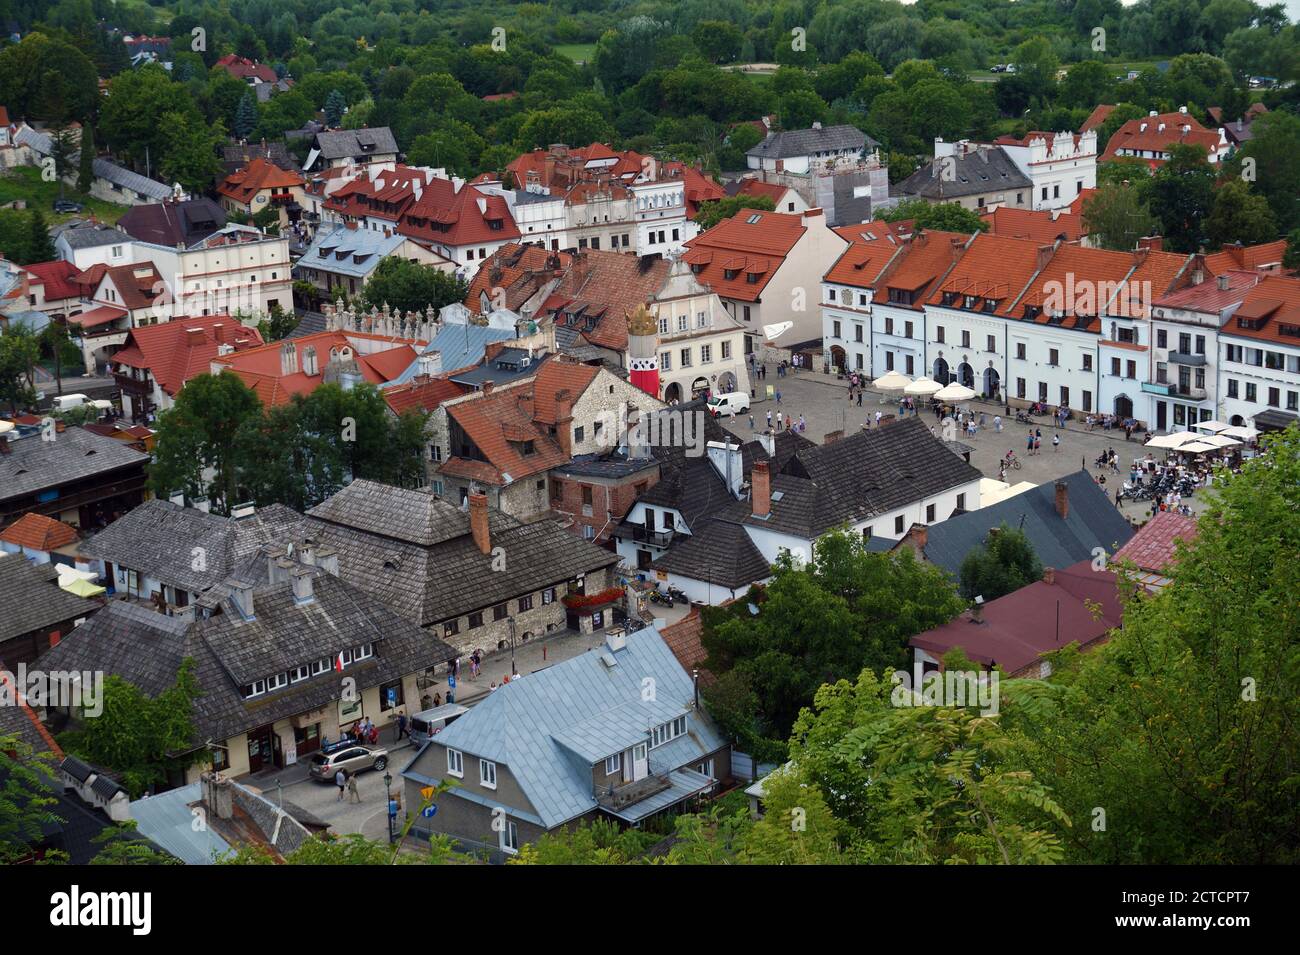 Una vista desde la parte superior de la plaza principal de la histórica ciudad renacentista de Kazimierz Dolny en Polonia. Foto de stock